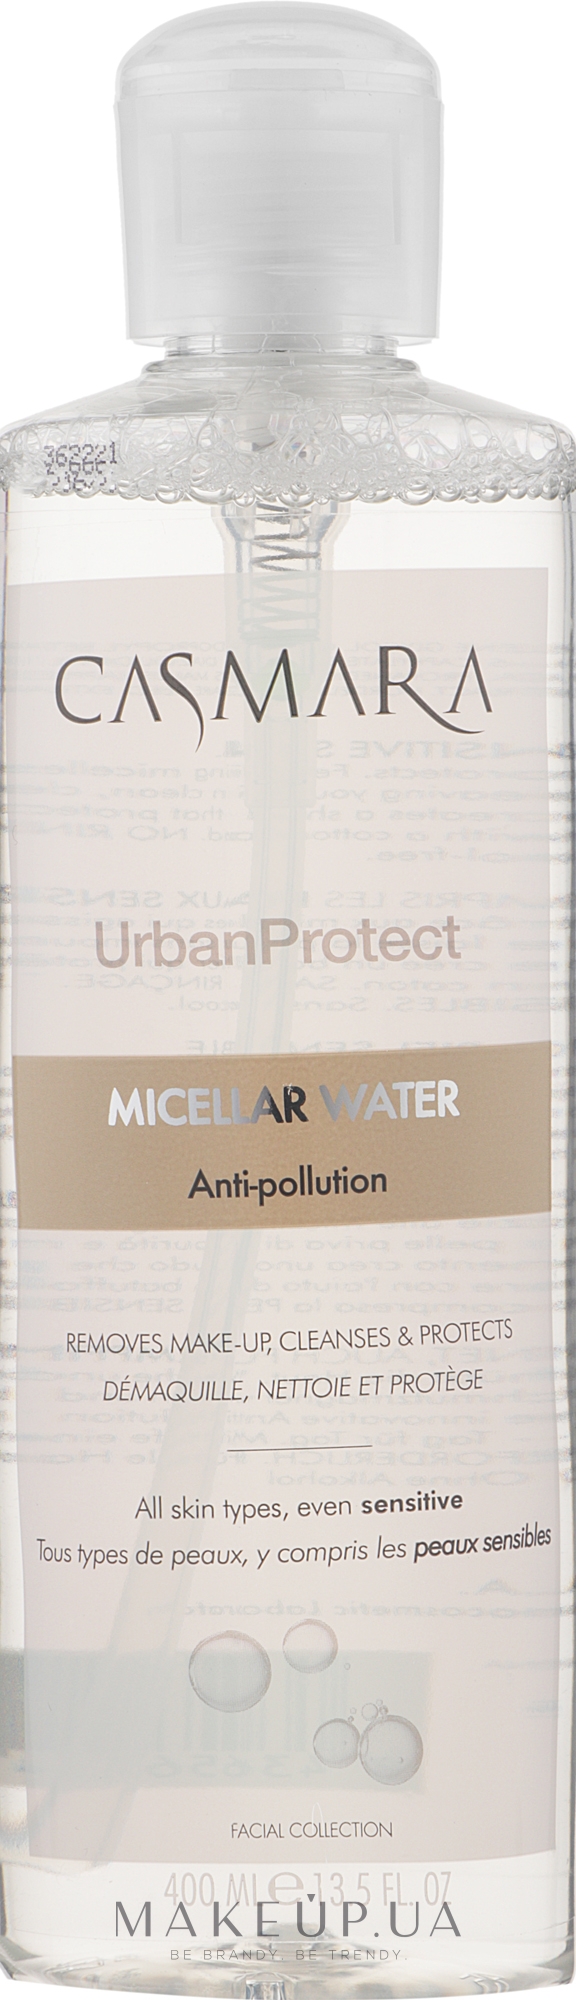 Міцелярна вода для очищення і зняття макіяжу - Casmara Urban Protect Micellar Water — фото 400ml